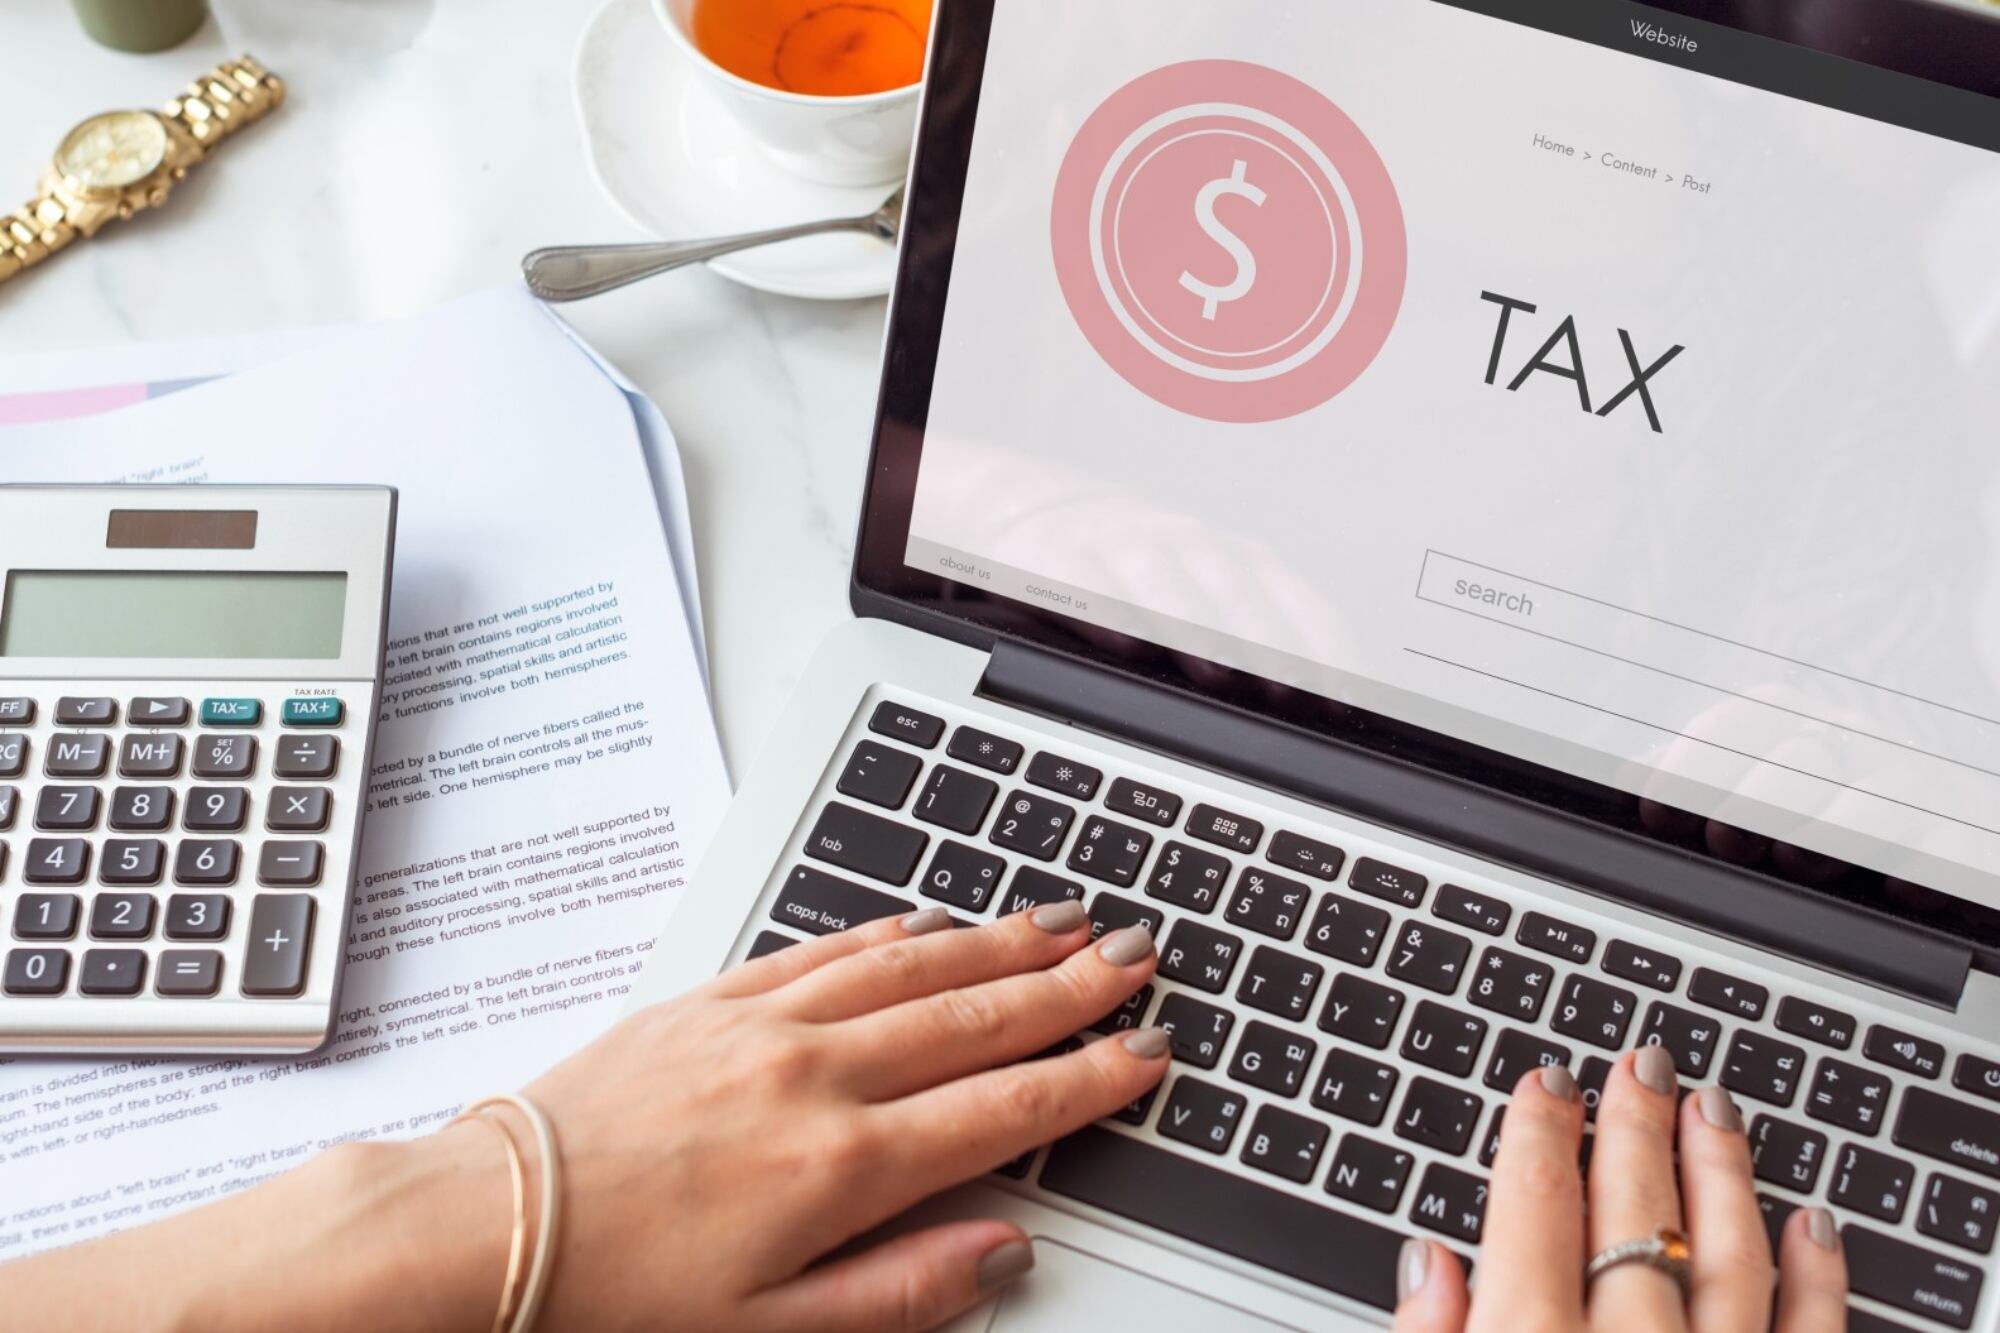 Fin de semana sin impuestos en Texas: la lista de artículos incluidos en el “tax holiday”